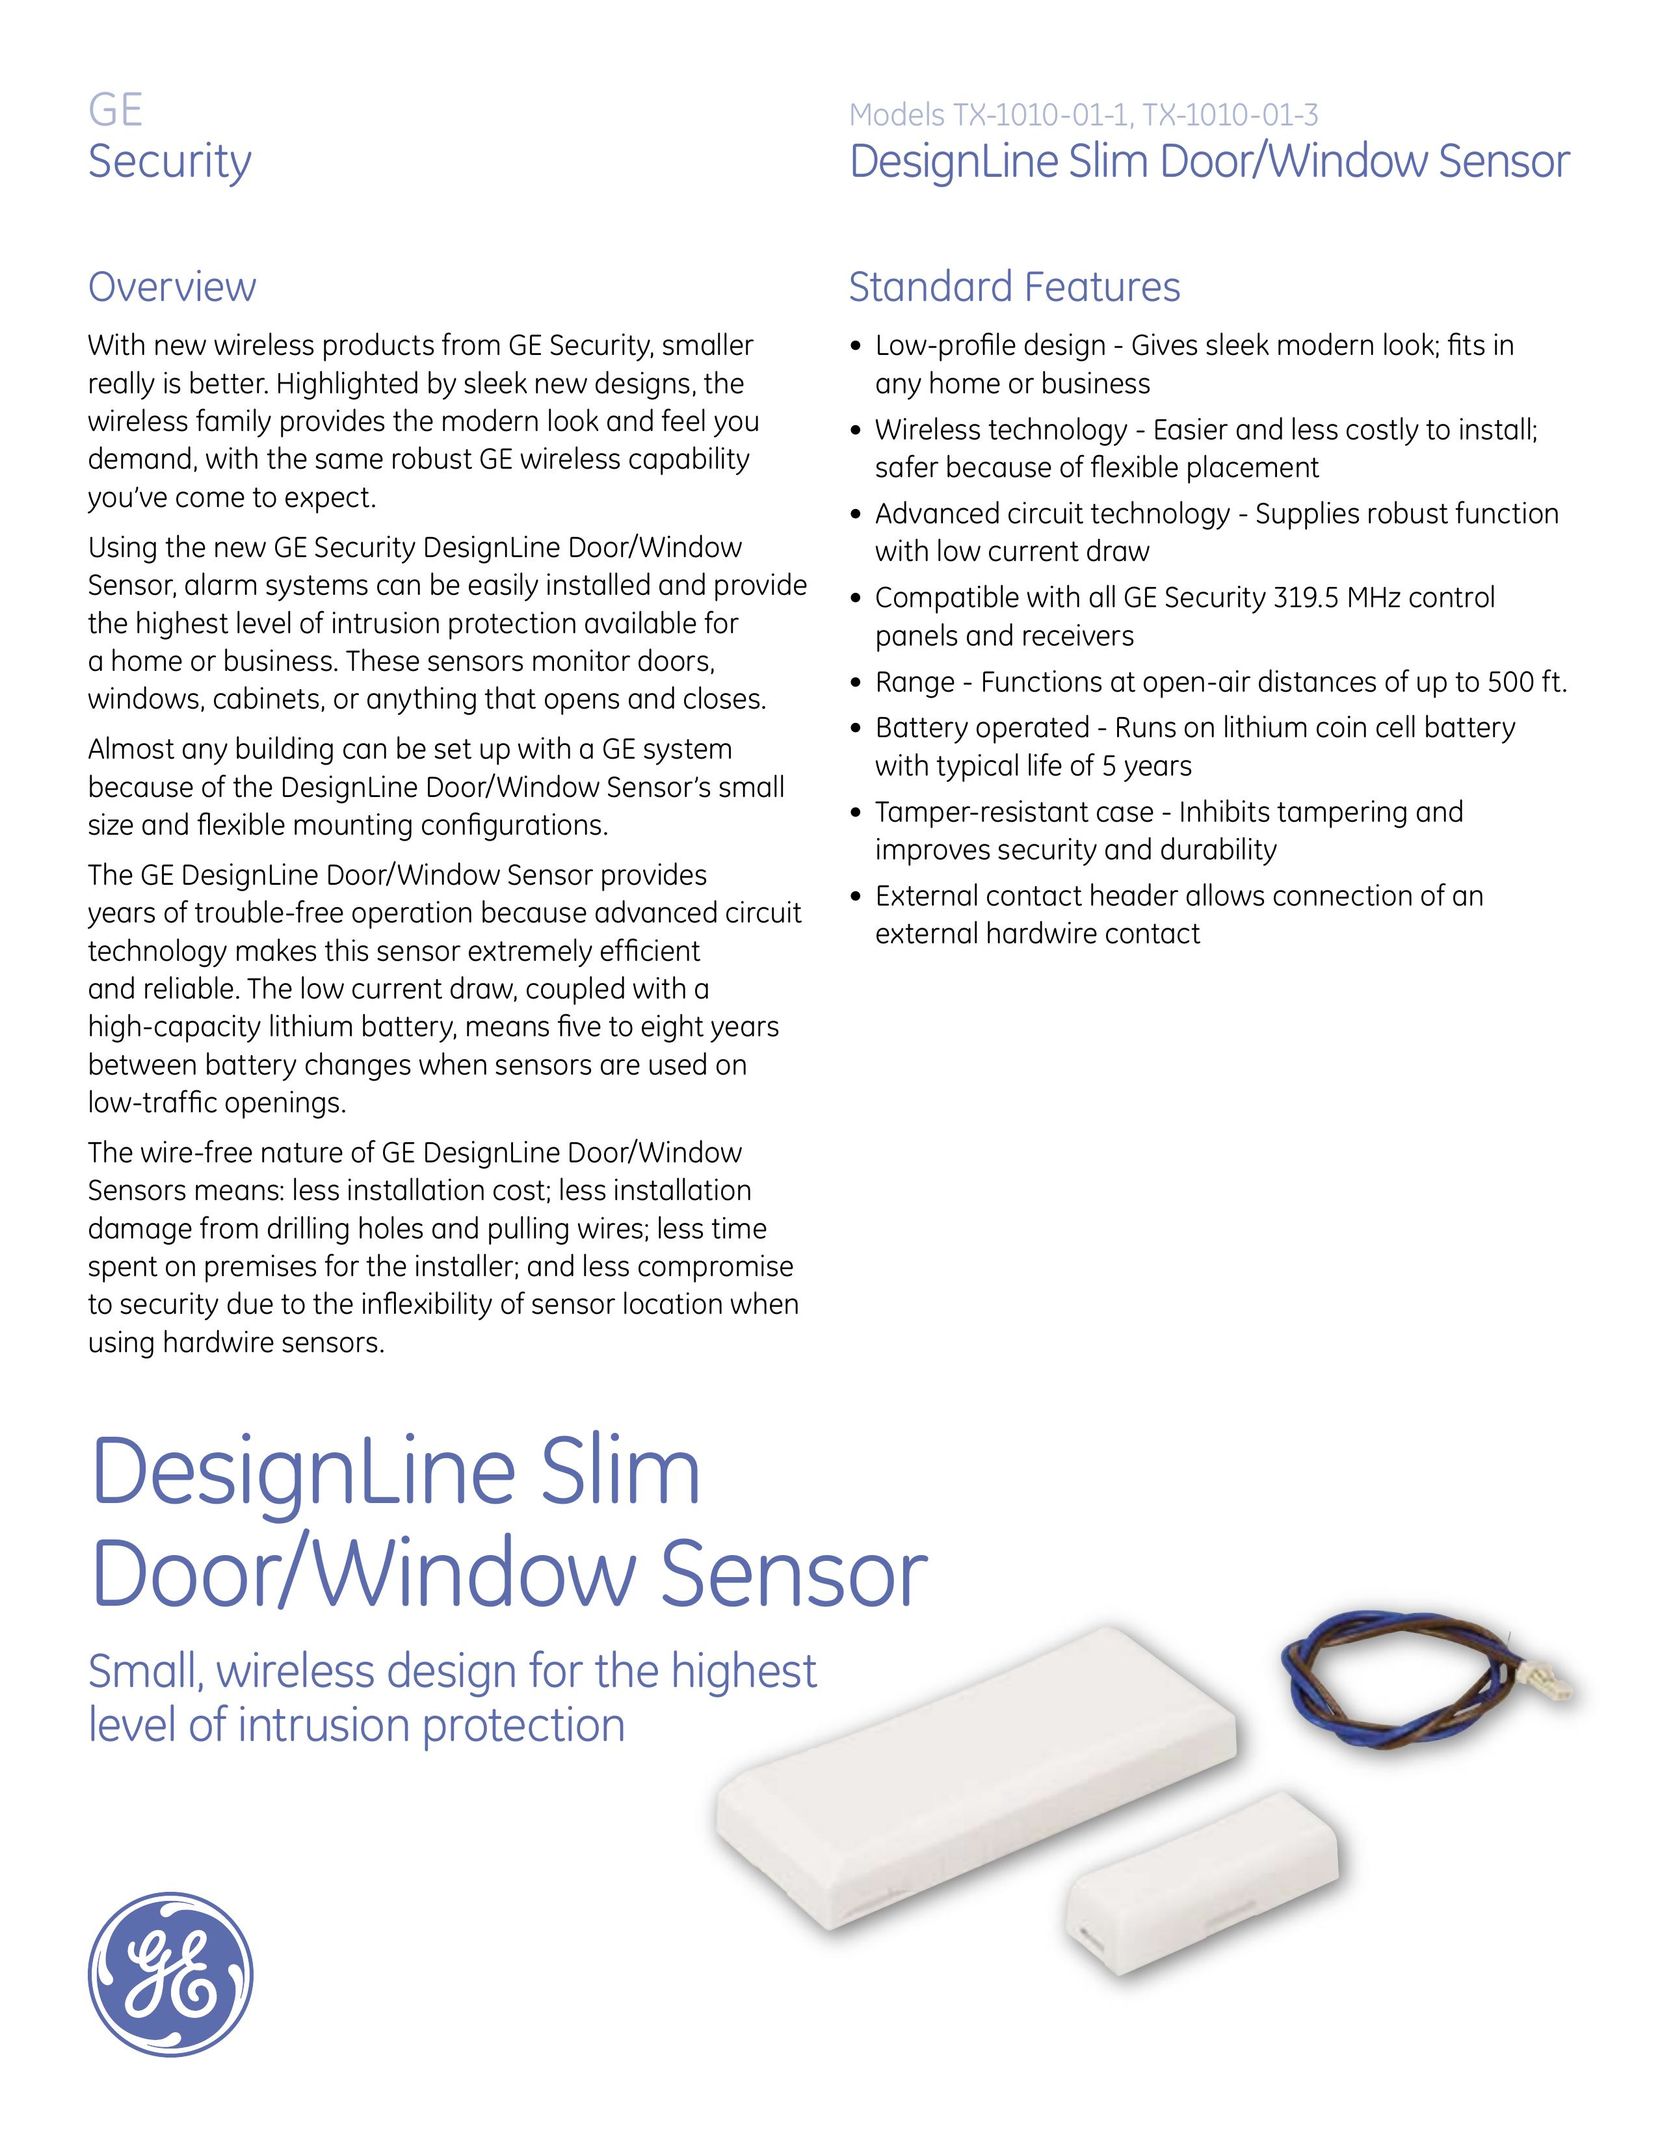 GE TX-1010-01-1 Stud Sensor User Manual